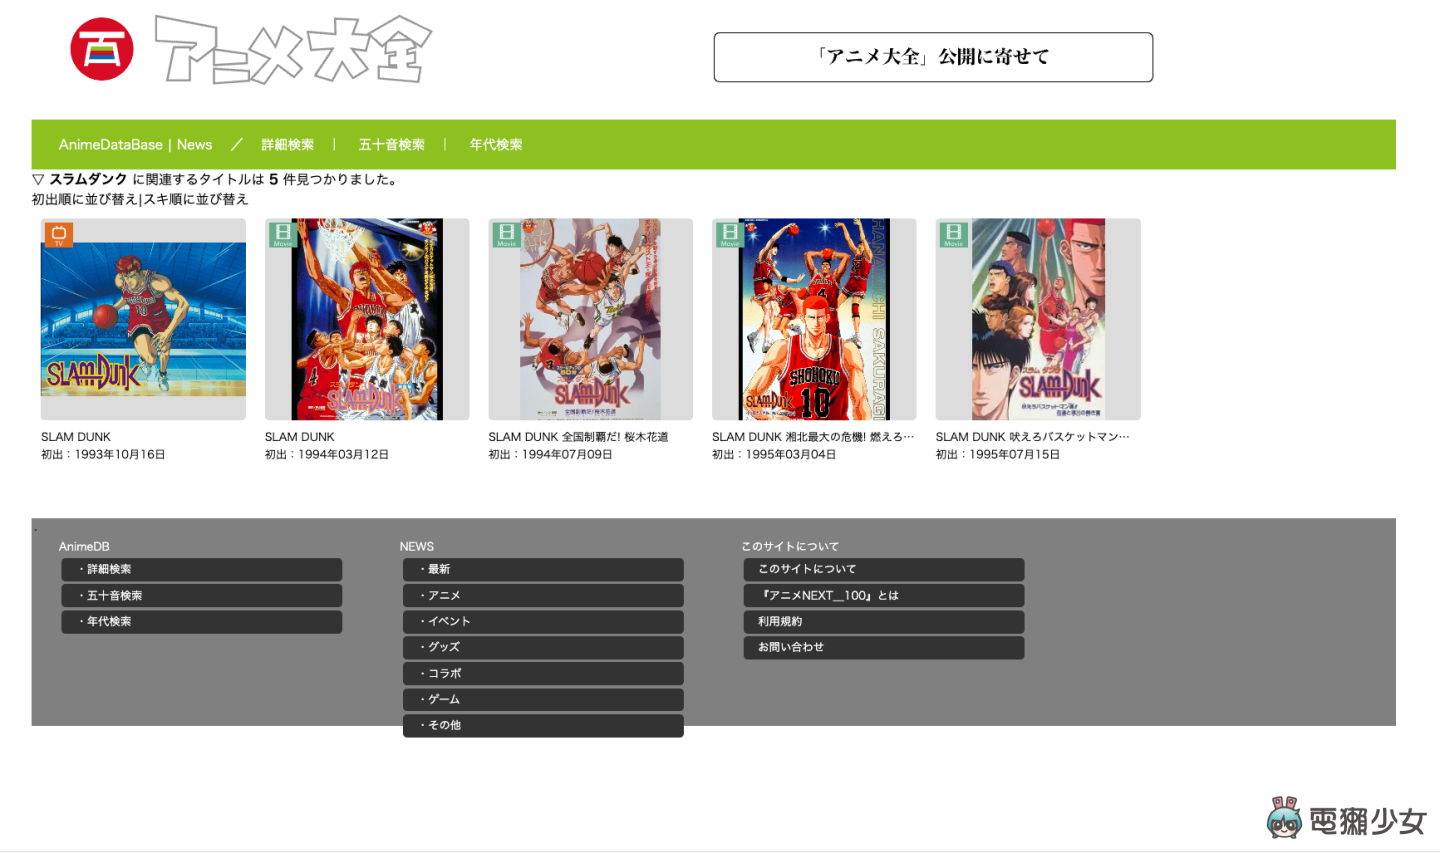 收錄近 15,000 部動畫！日本動畫資料庫『 動畫大全 』上線，你的動畫經典在裡面嗎？